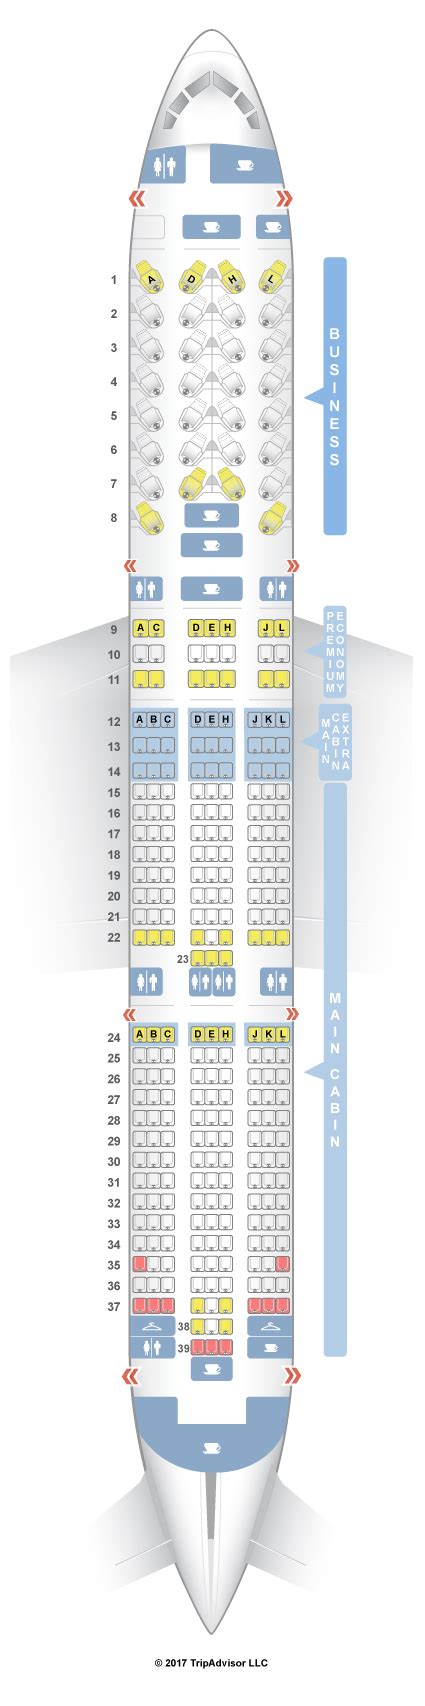 Seatguru Seat Map American Airlines Boeing